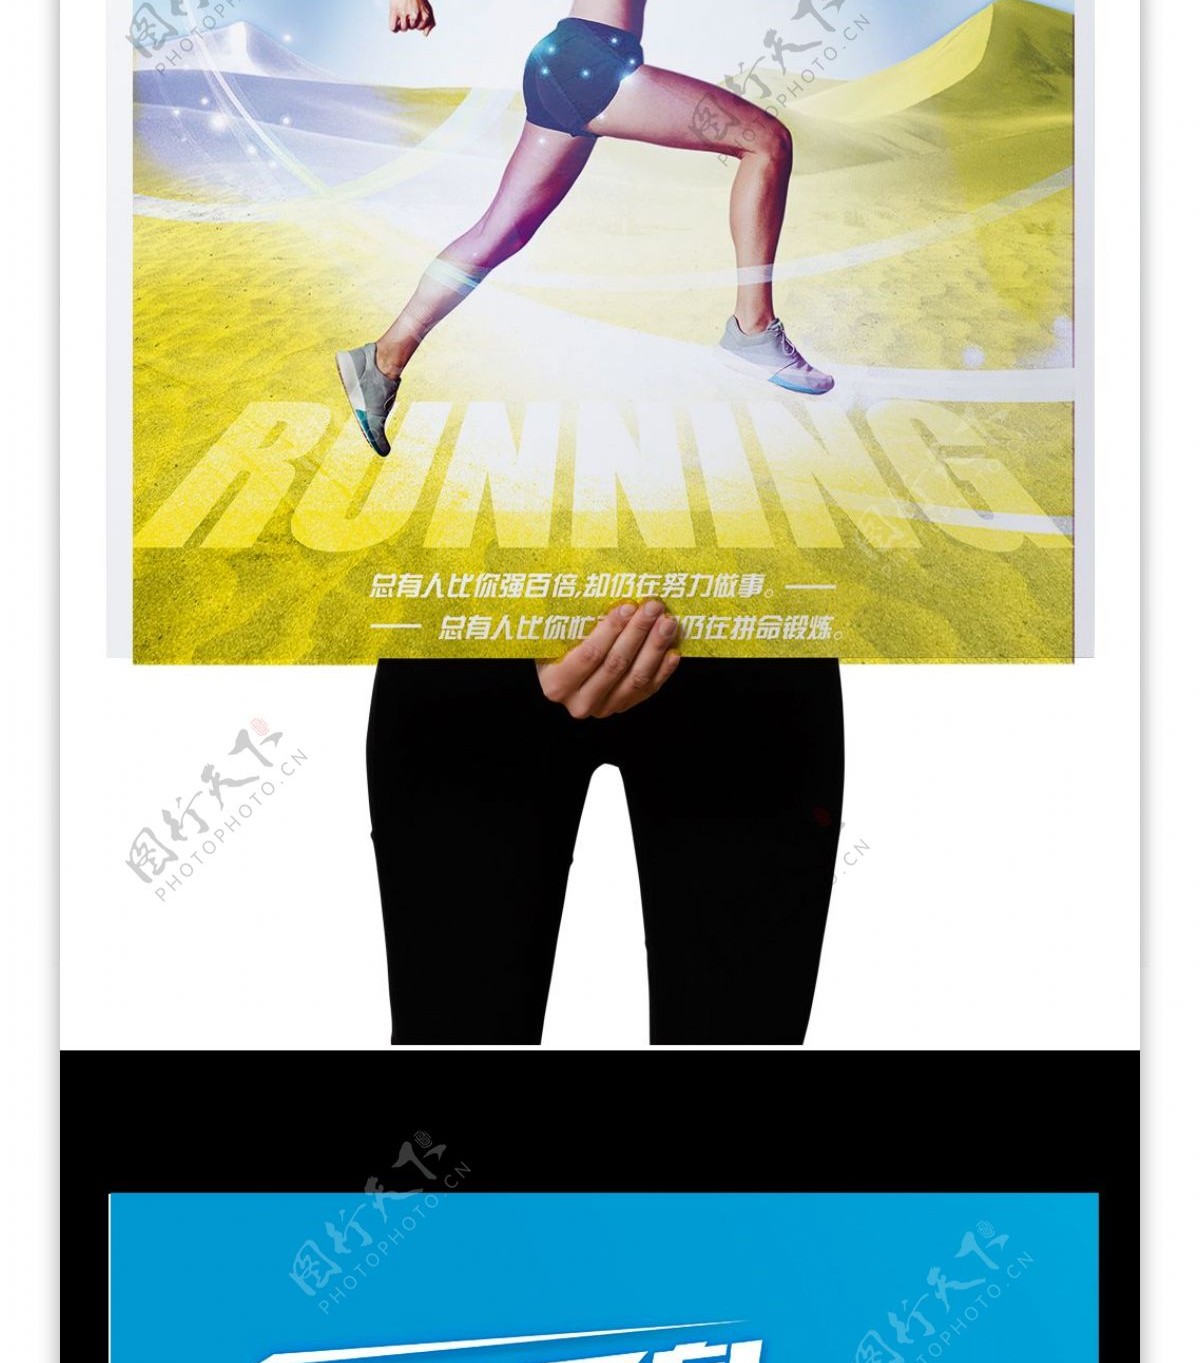 生命不息运动不止跑步健身运动蓝黄色海报